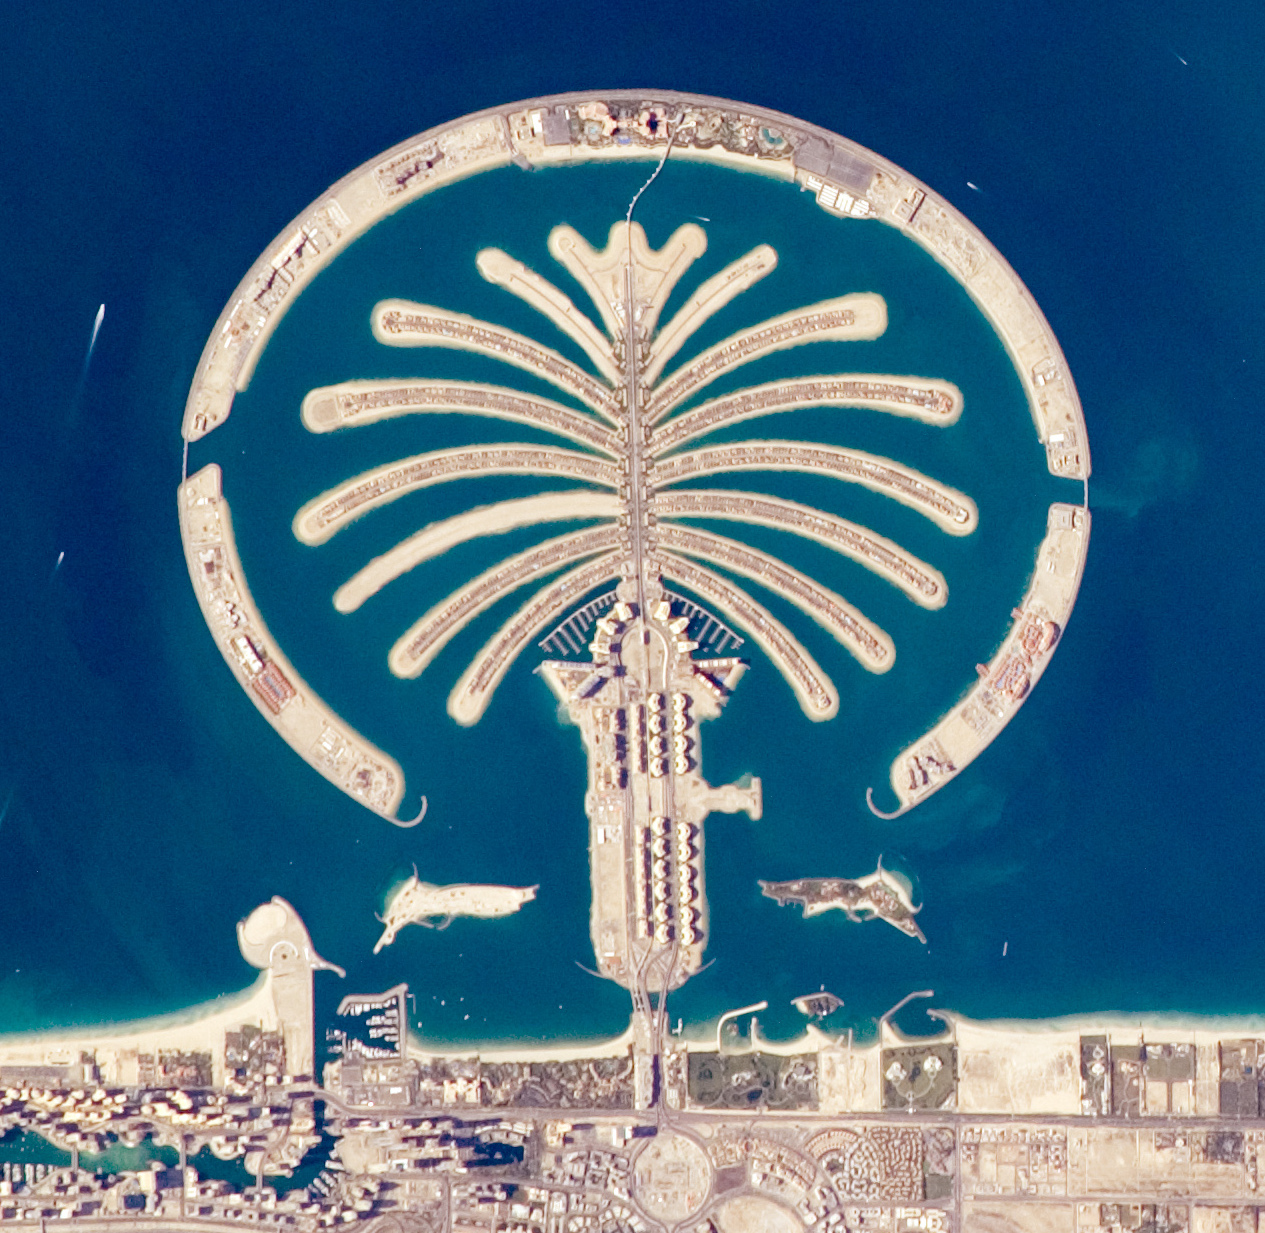 a large artificial island shaped like a palm tree off an urban coastline